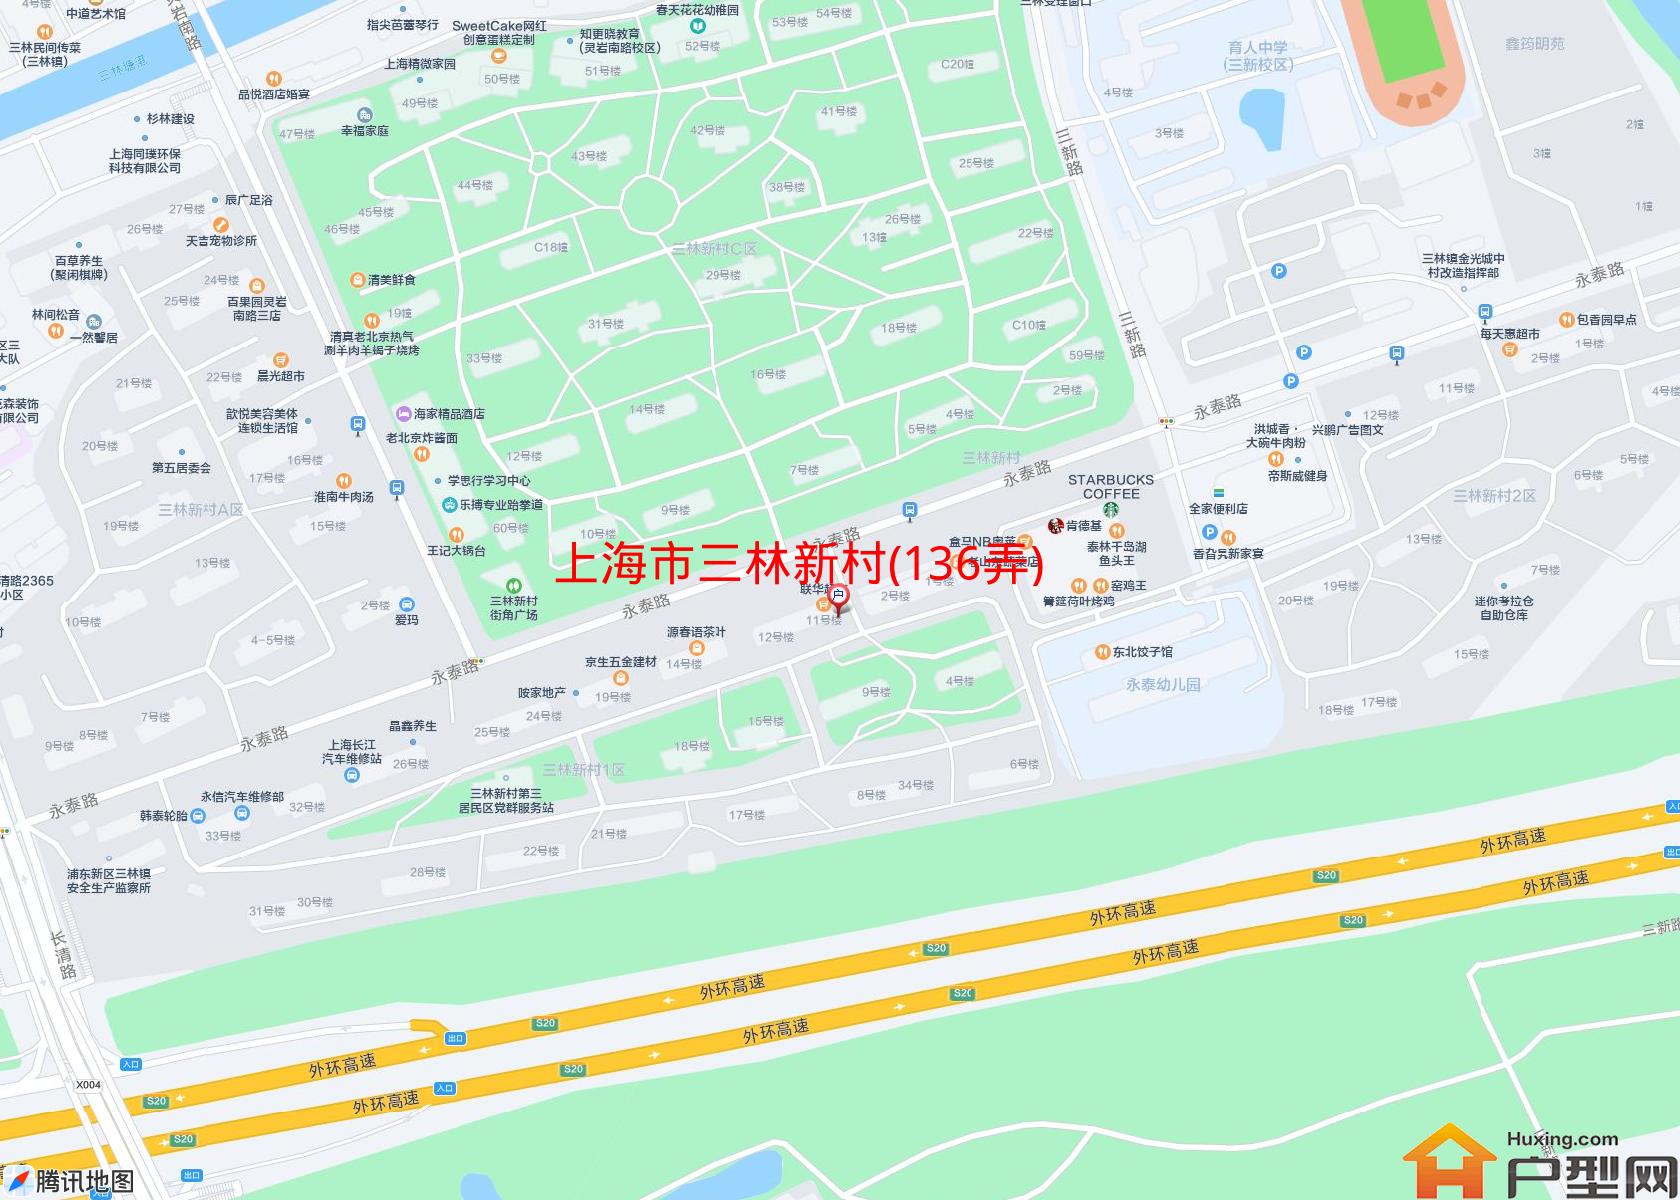 三林新村(136弄)小区 - 户型网